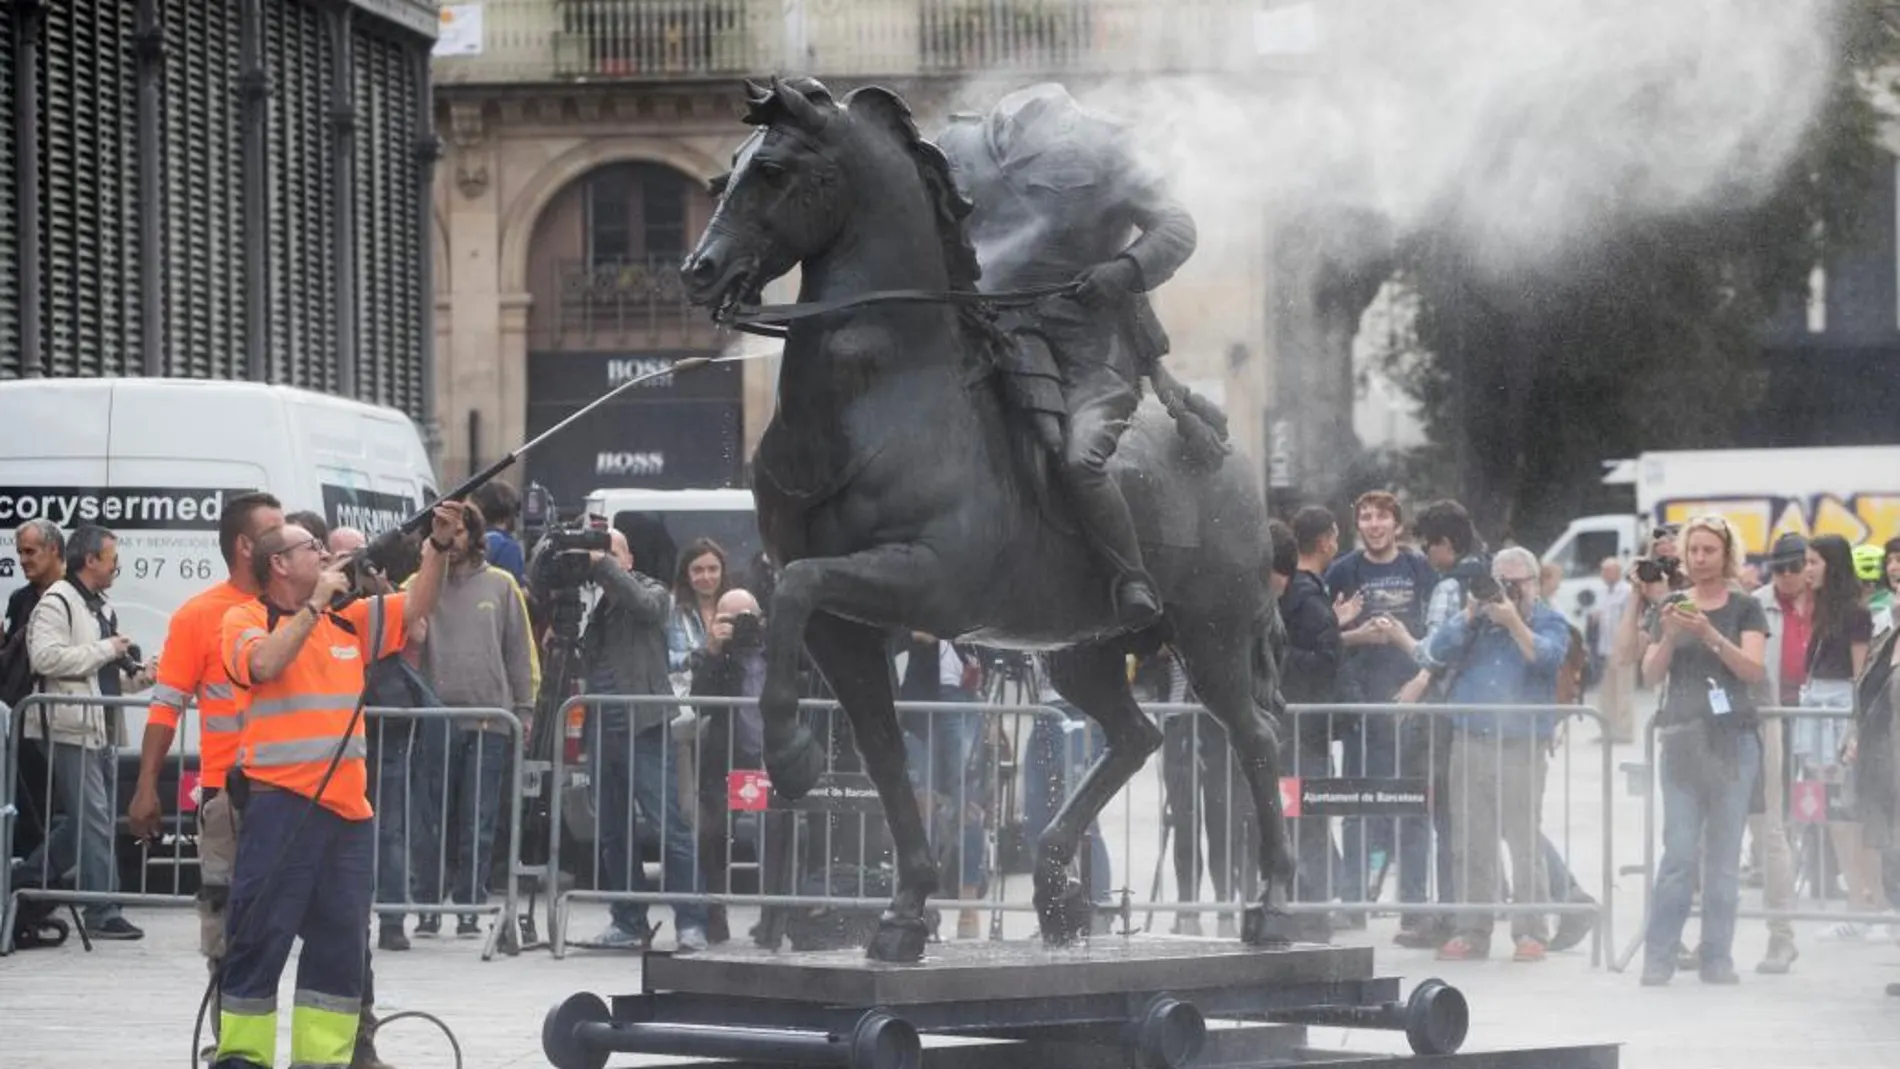 Operarios limpian la escultura de Franco, sobre la que manifestantes habían arrojado pintura.